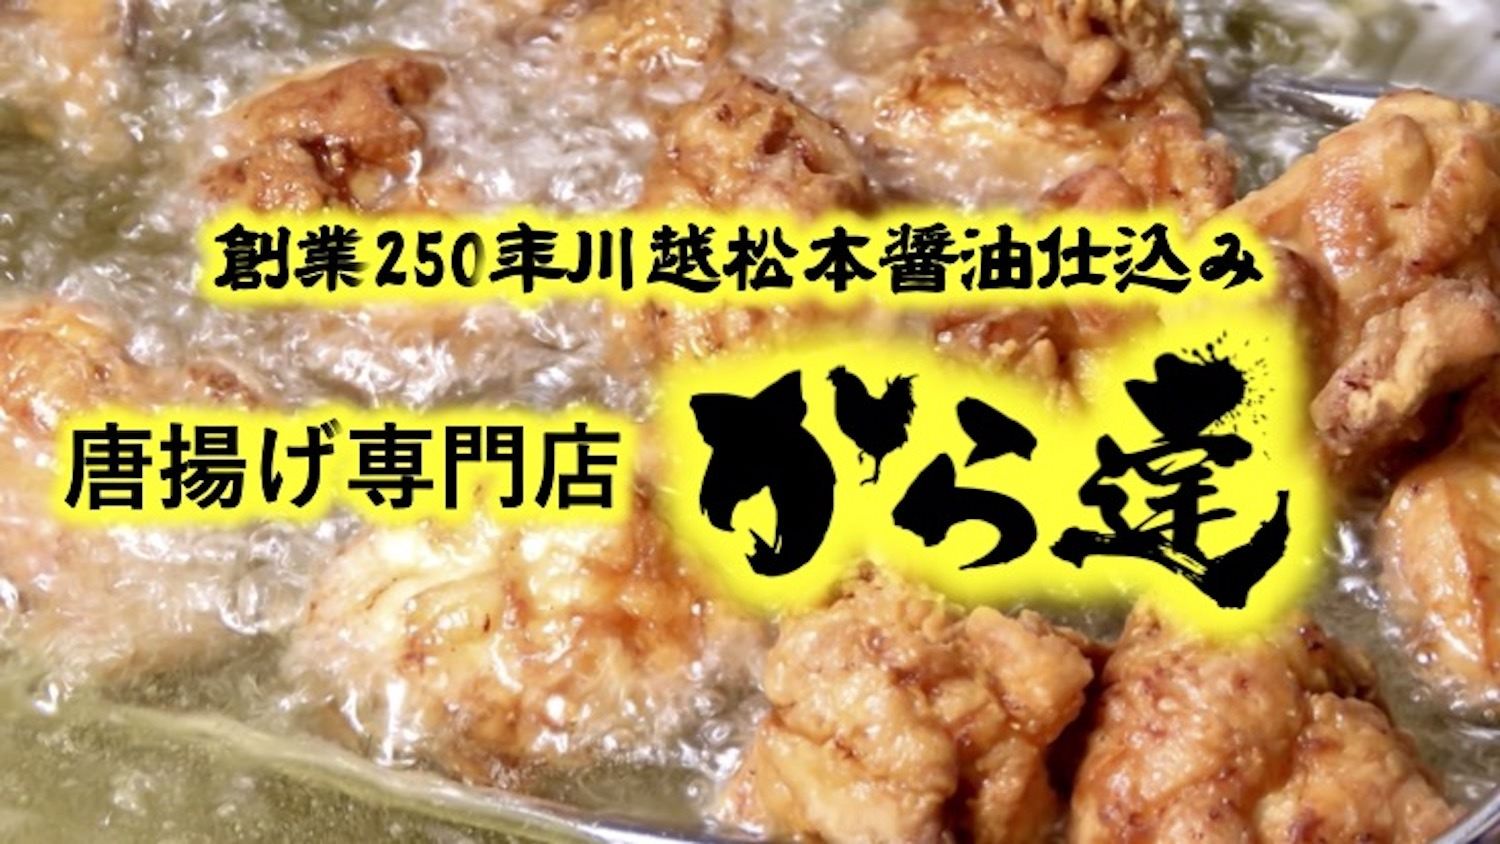 村外不出！愛知の伝統ソウルフード
『味つけ廃鶏』の存続をかけたクラウドファンディングが
開始1ヶ月半で達成率約830％を突破